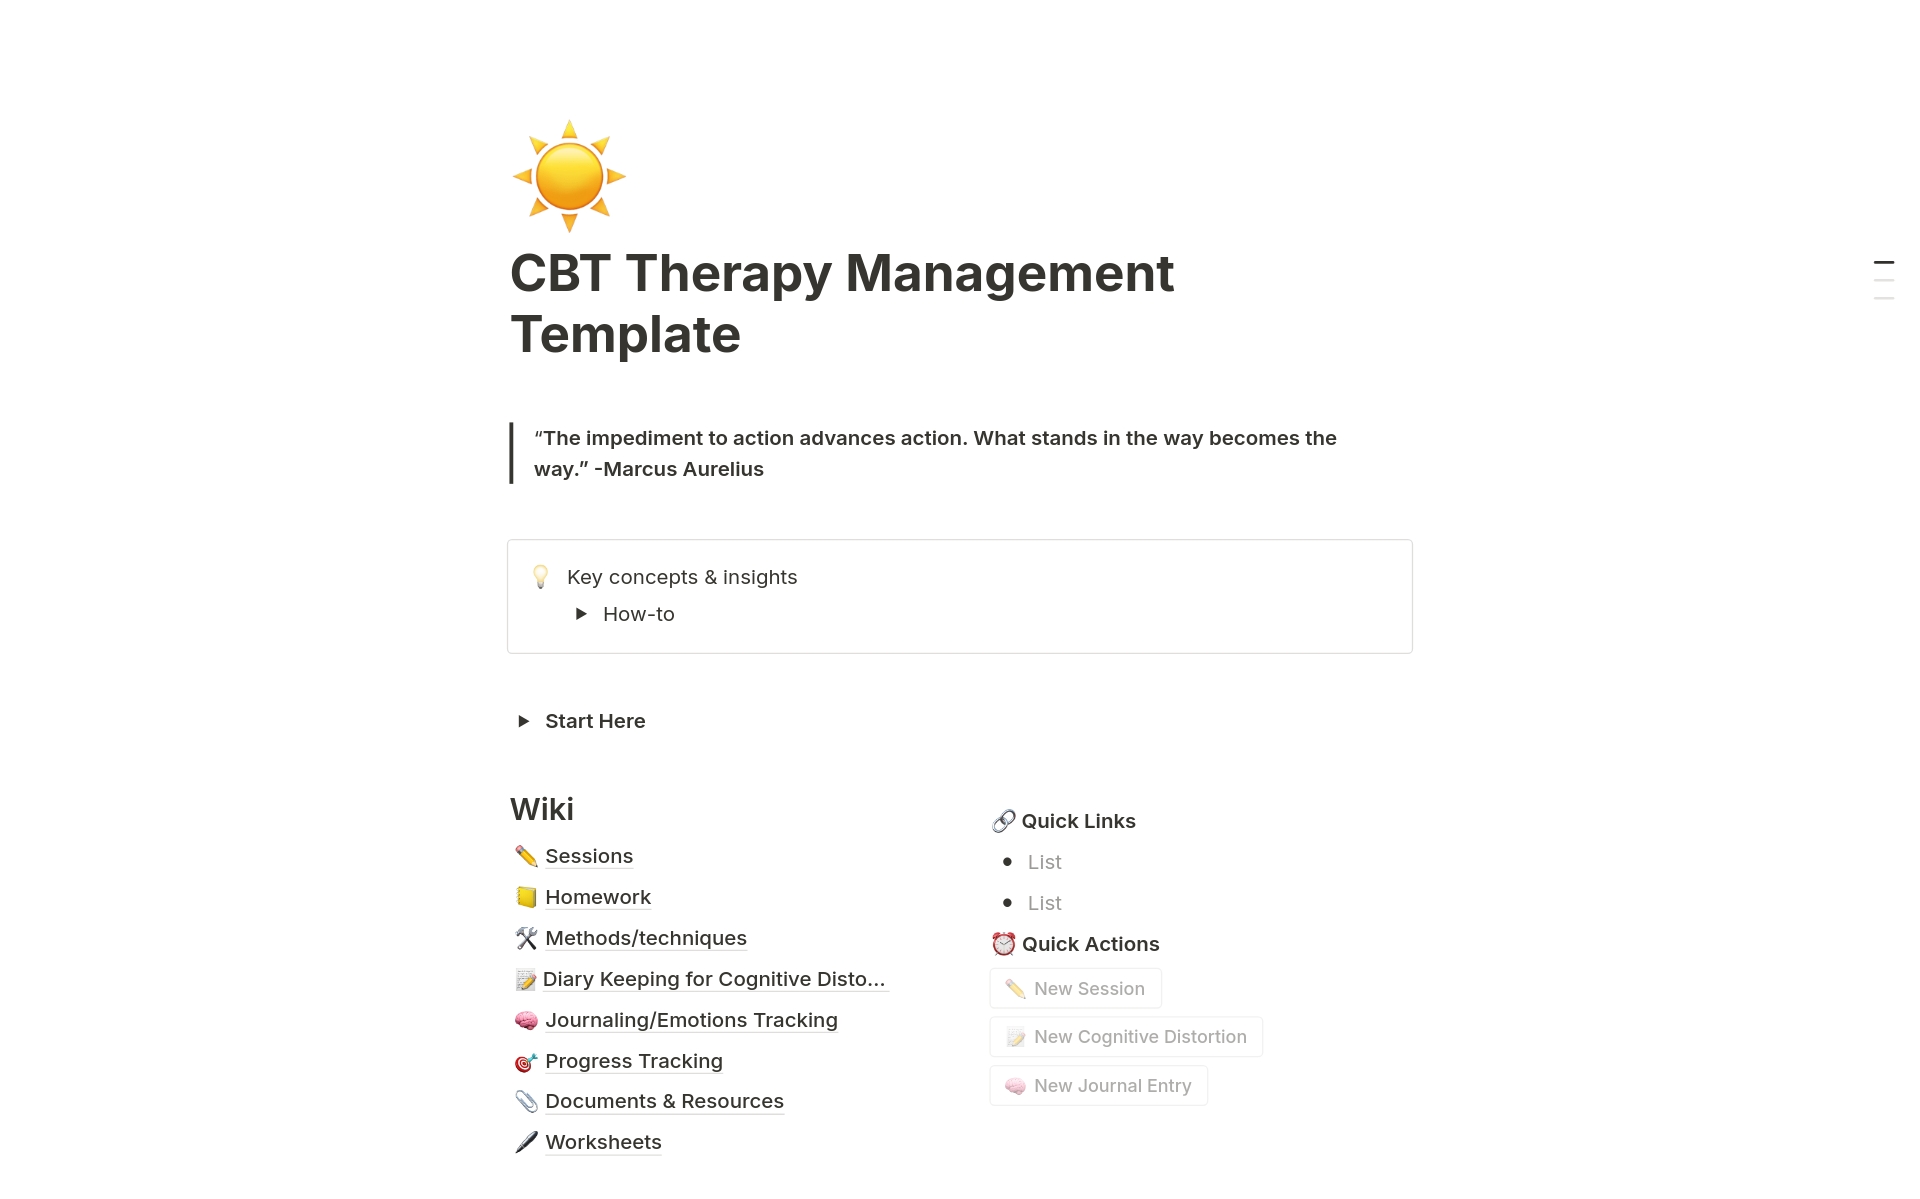 Uma prévia do modelo para CBT Therapy Management